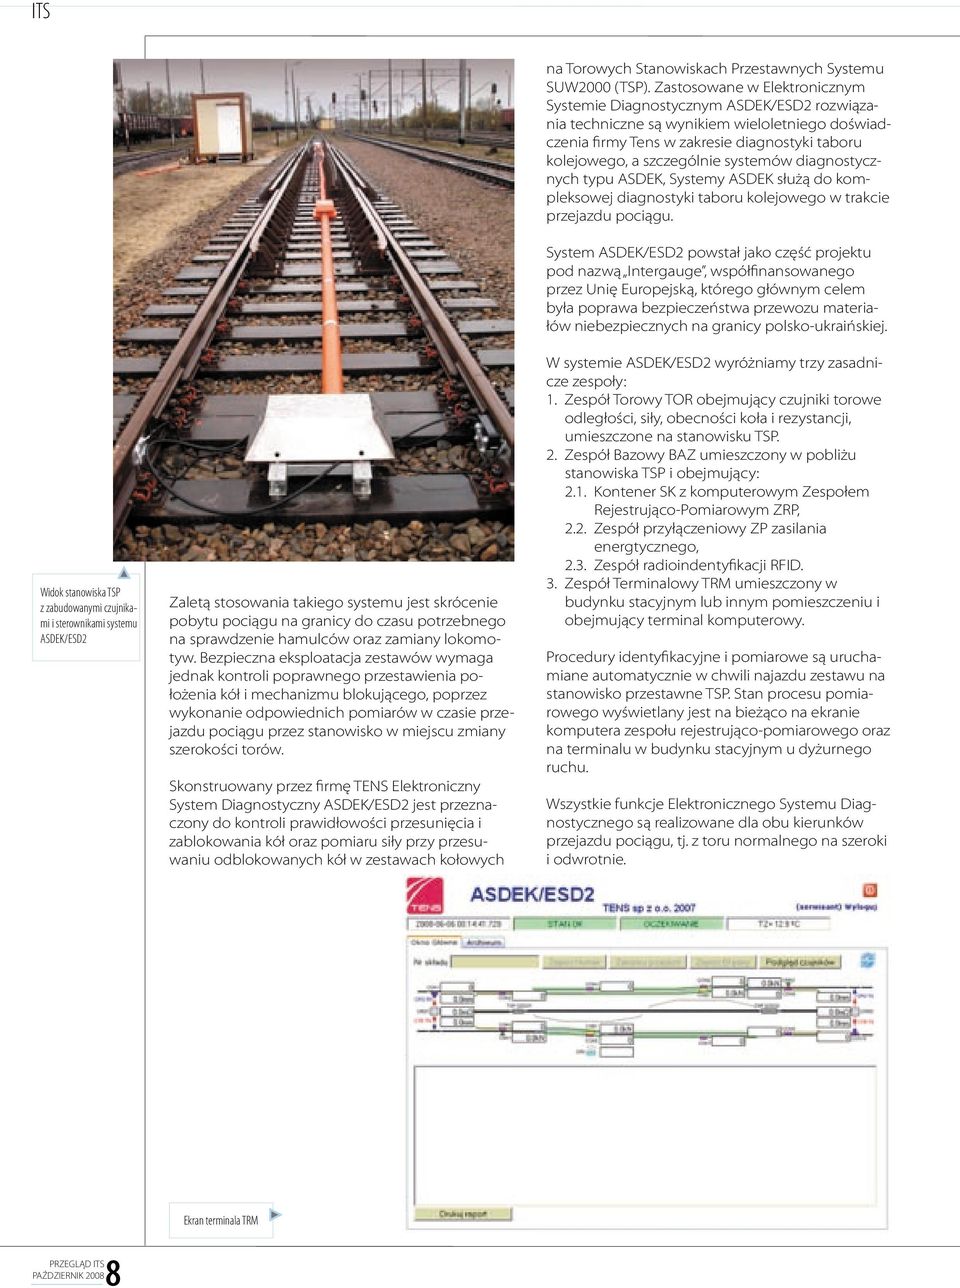 Bezpieczna eksploatacja zestawów wymaga jednak kontroli poprawnego przestawienia położenia kół i mechanizmu blokującego, poprzez wykonanie odpowiednich pomiarów w czasie przejazdu pociągu przez